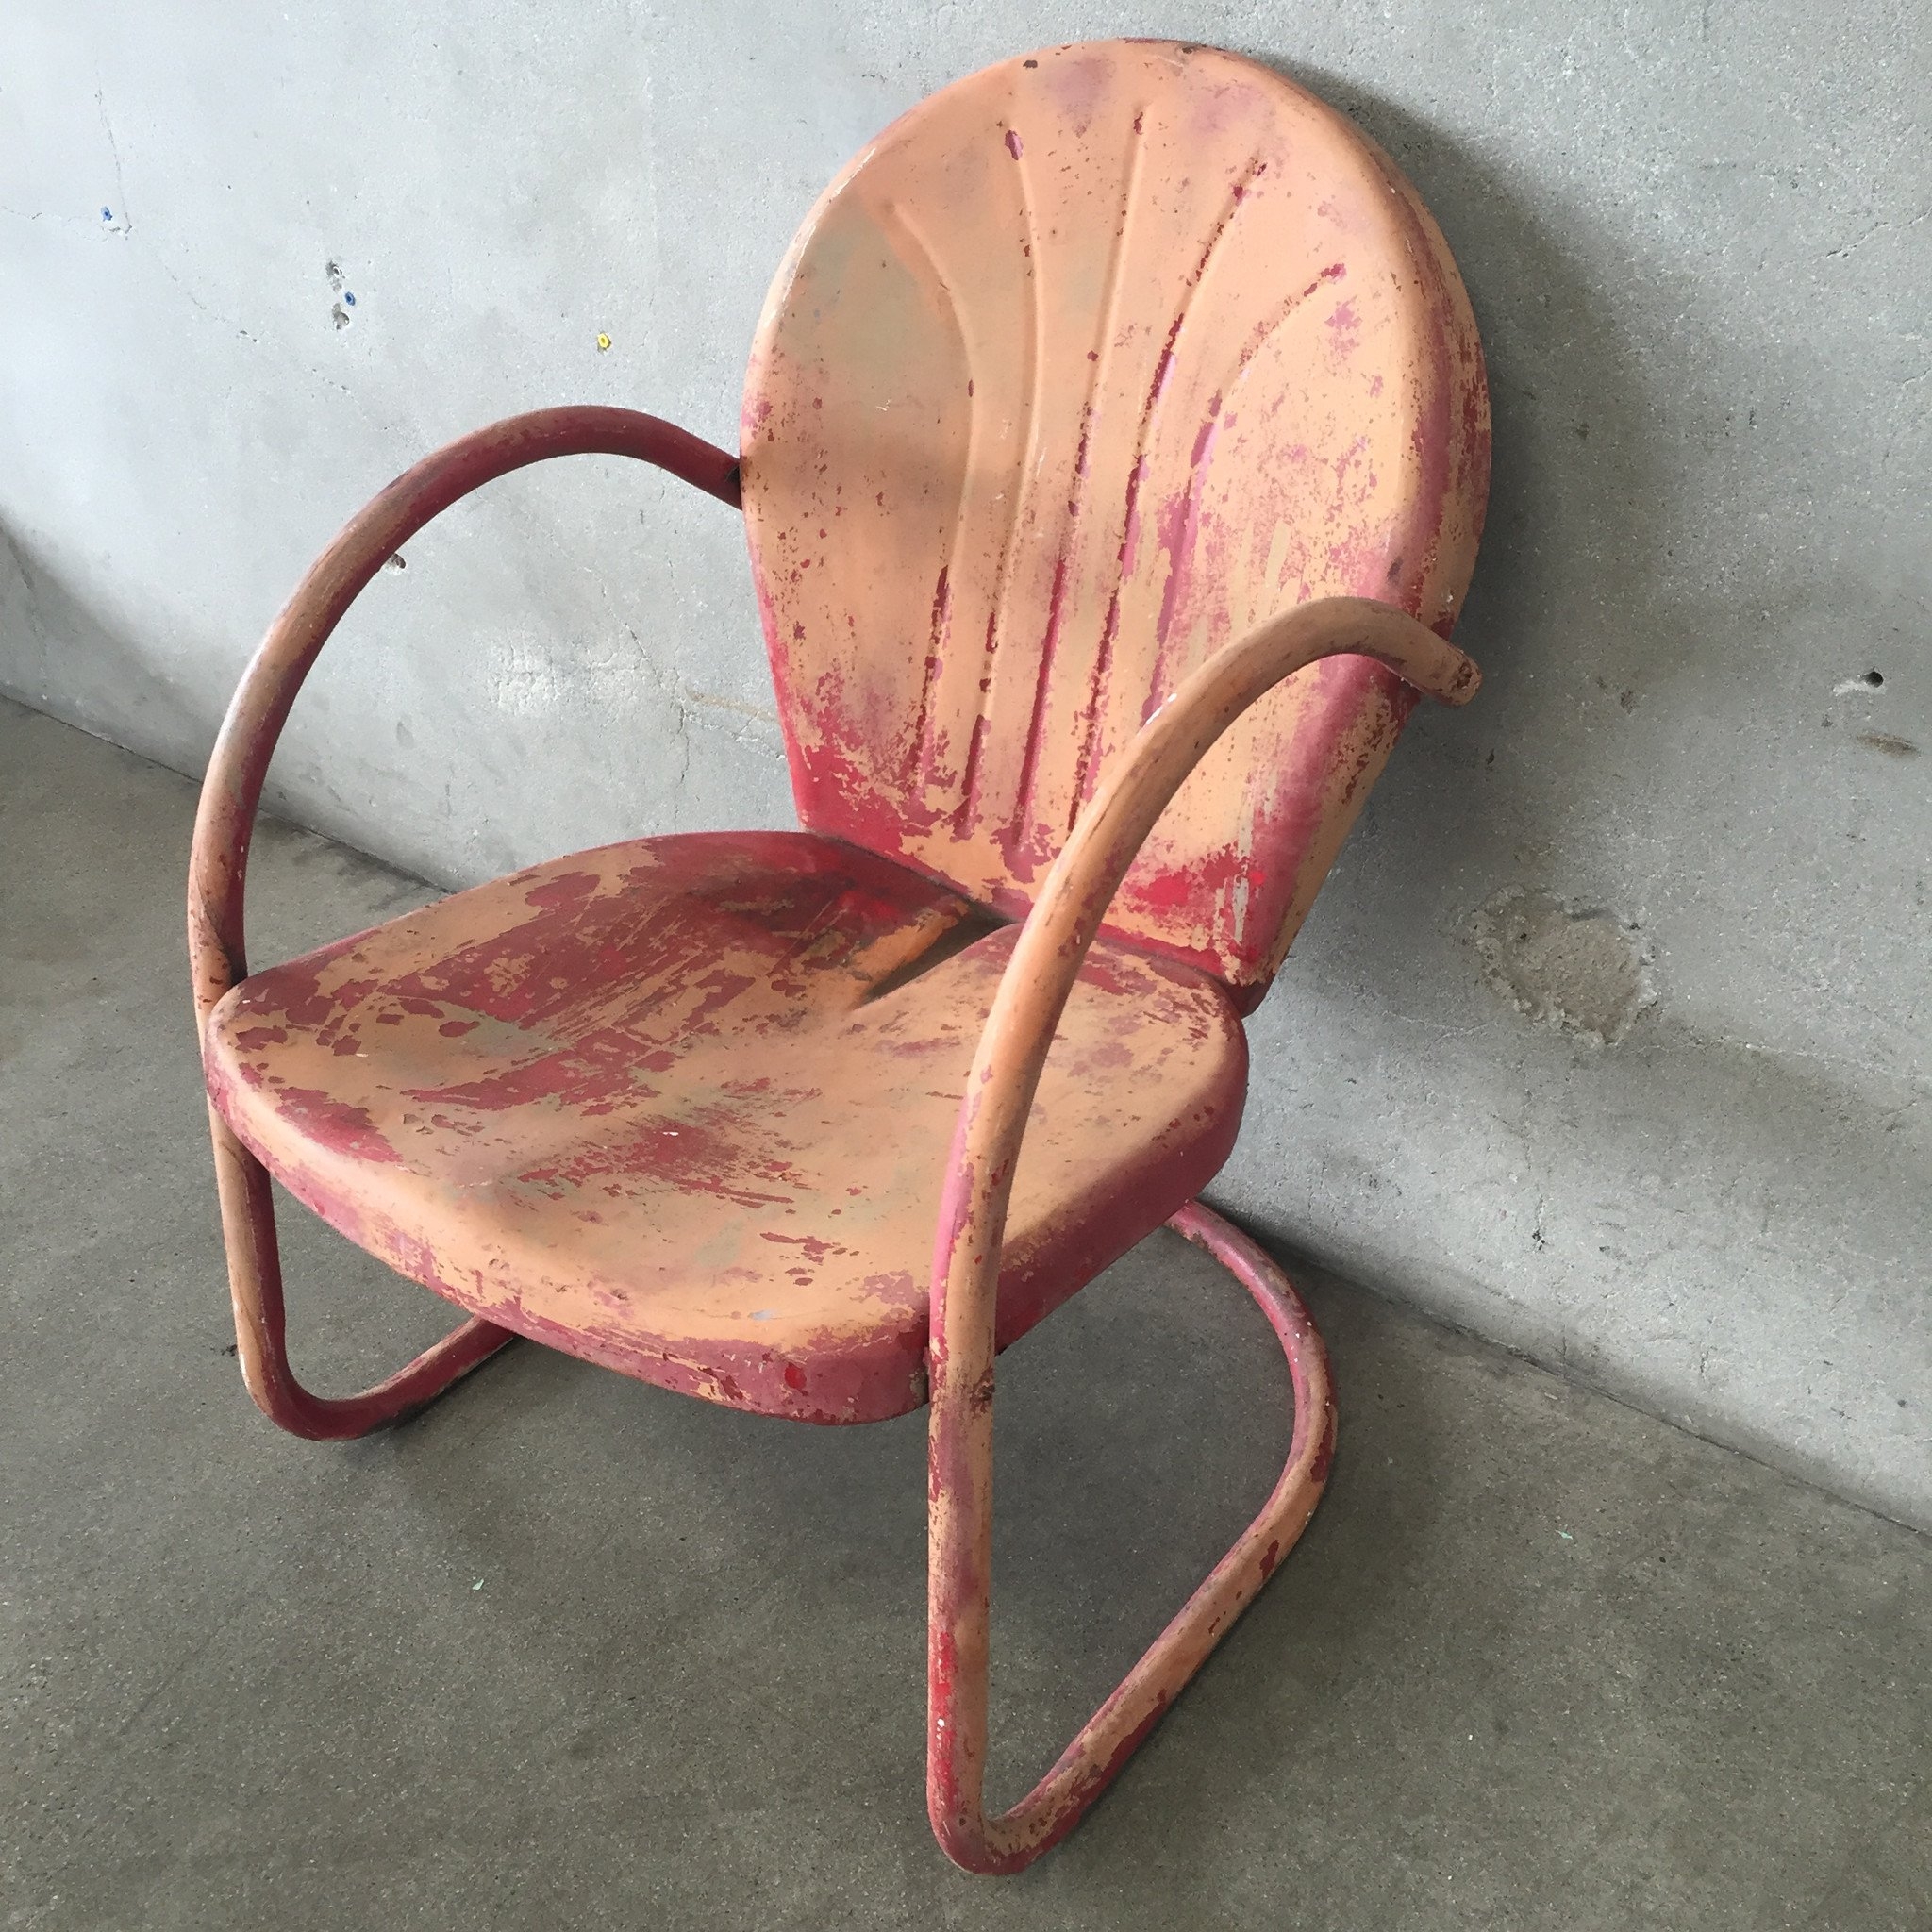 Vintage Metal Lawn Chairs Visualhunt, Old Vintage Metal Outdoor Chairs